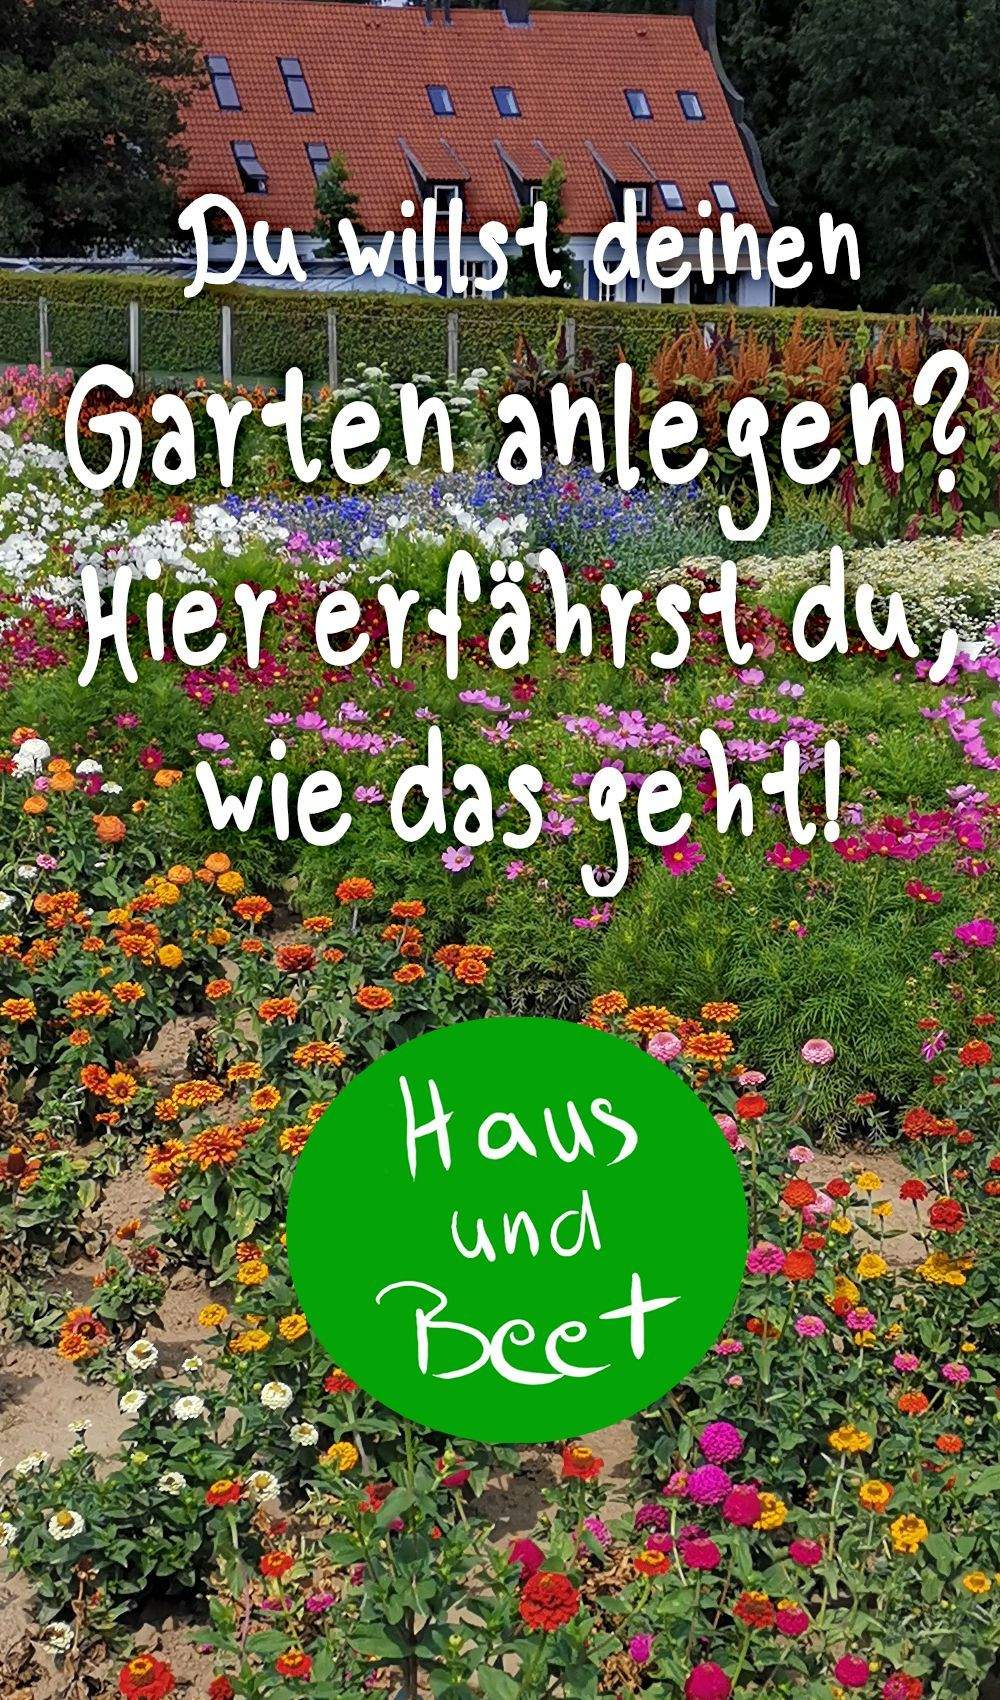 Garten Gestalten Mit Wenig Geld Schön Garten Anlegen Haus Und Beet Gemüsegartenanlegen Garten